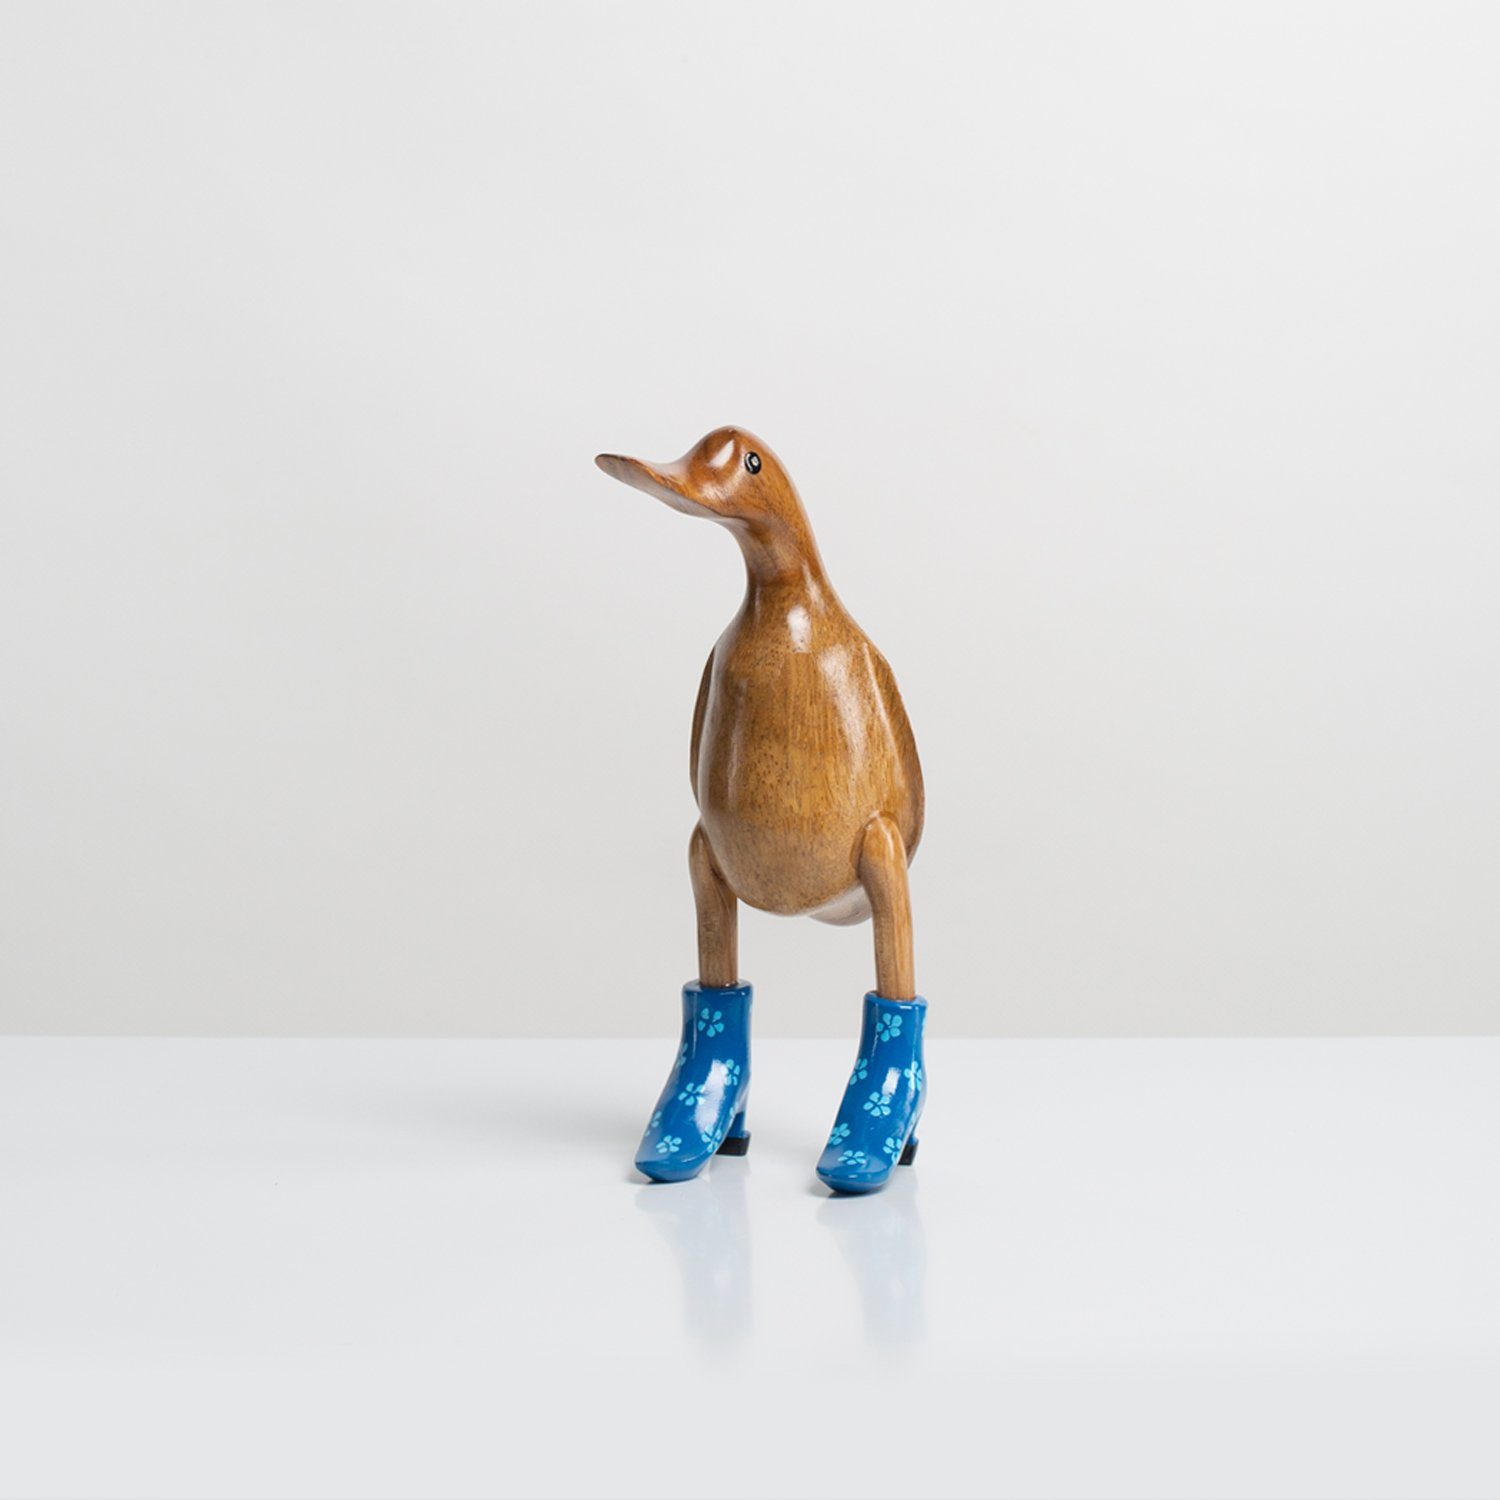 Holz Handgefertigte Ente Rikmani blau Absätze aus Dekofigur - Stiefel Dekoration